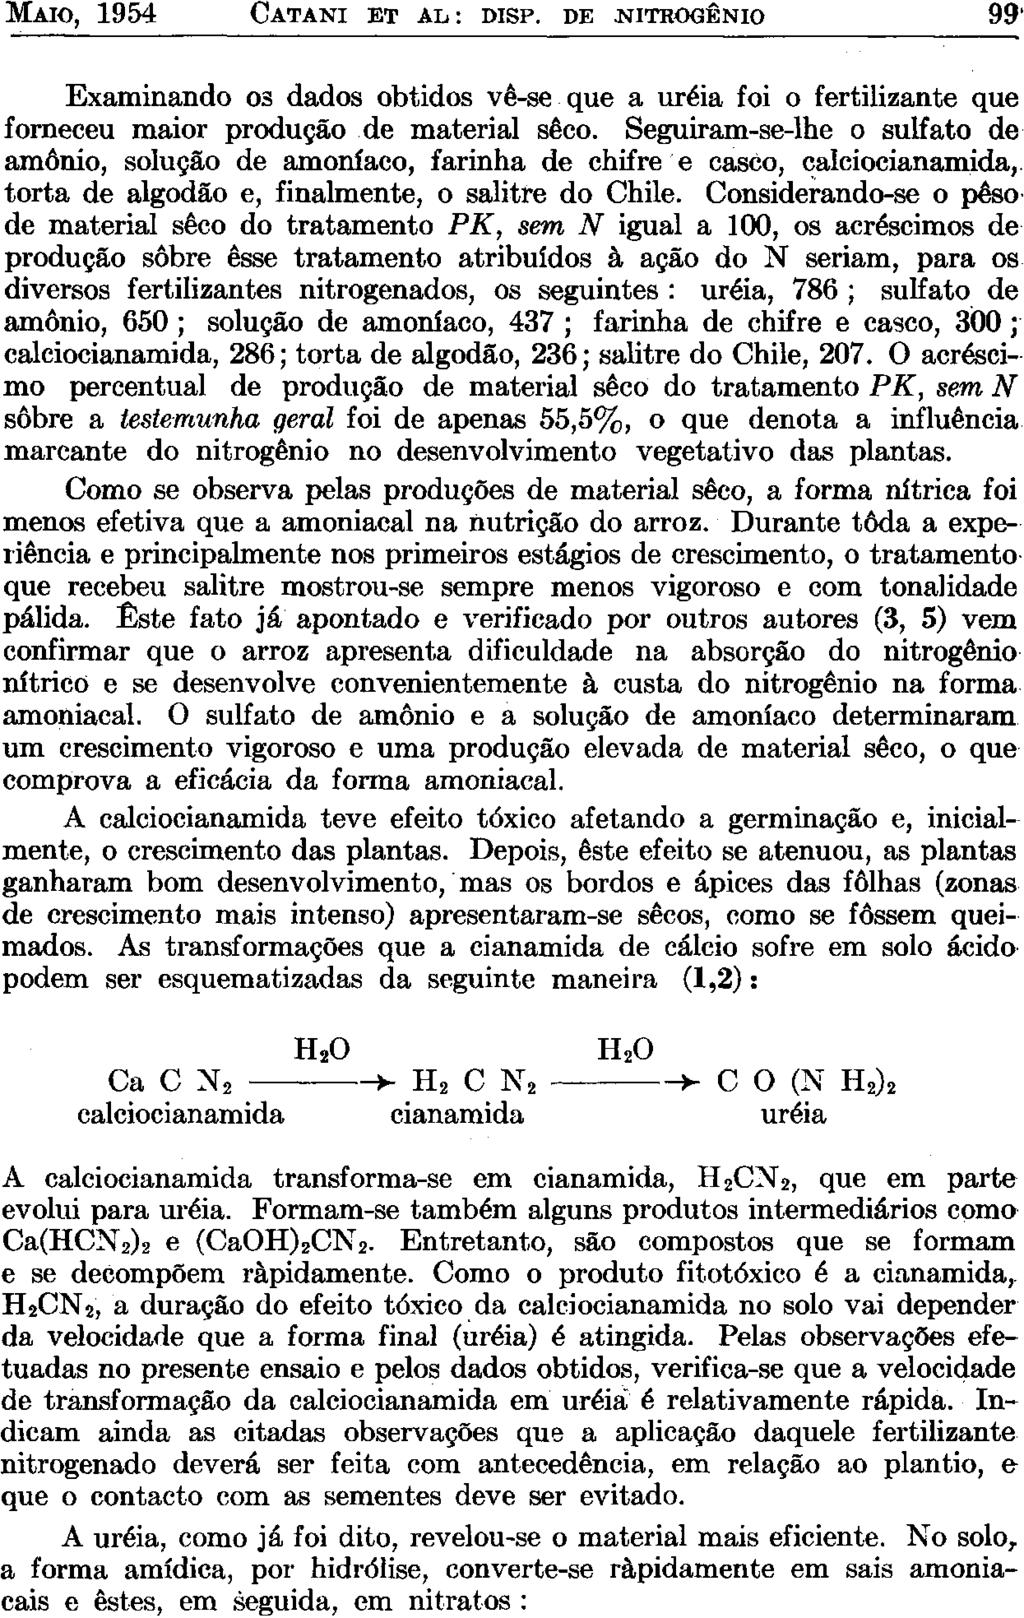 MAIO, 1954 CATANI ET AL: DISP. DE.NITROGÊNIO 99' Examinando os dados obtidos vê-se que a uréia foi o fertilizante que forneceu maior produção de material seco.